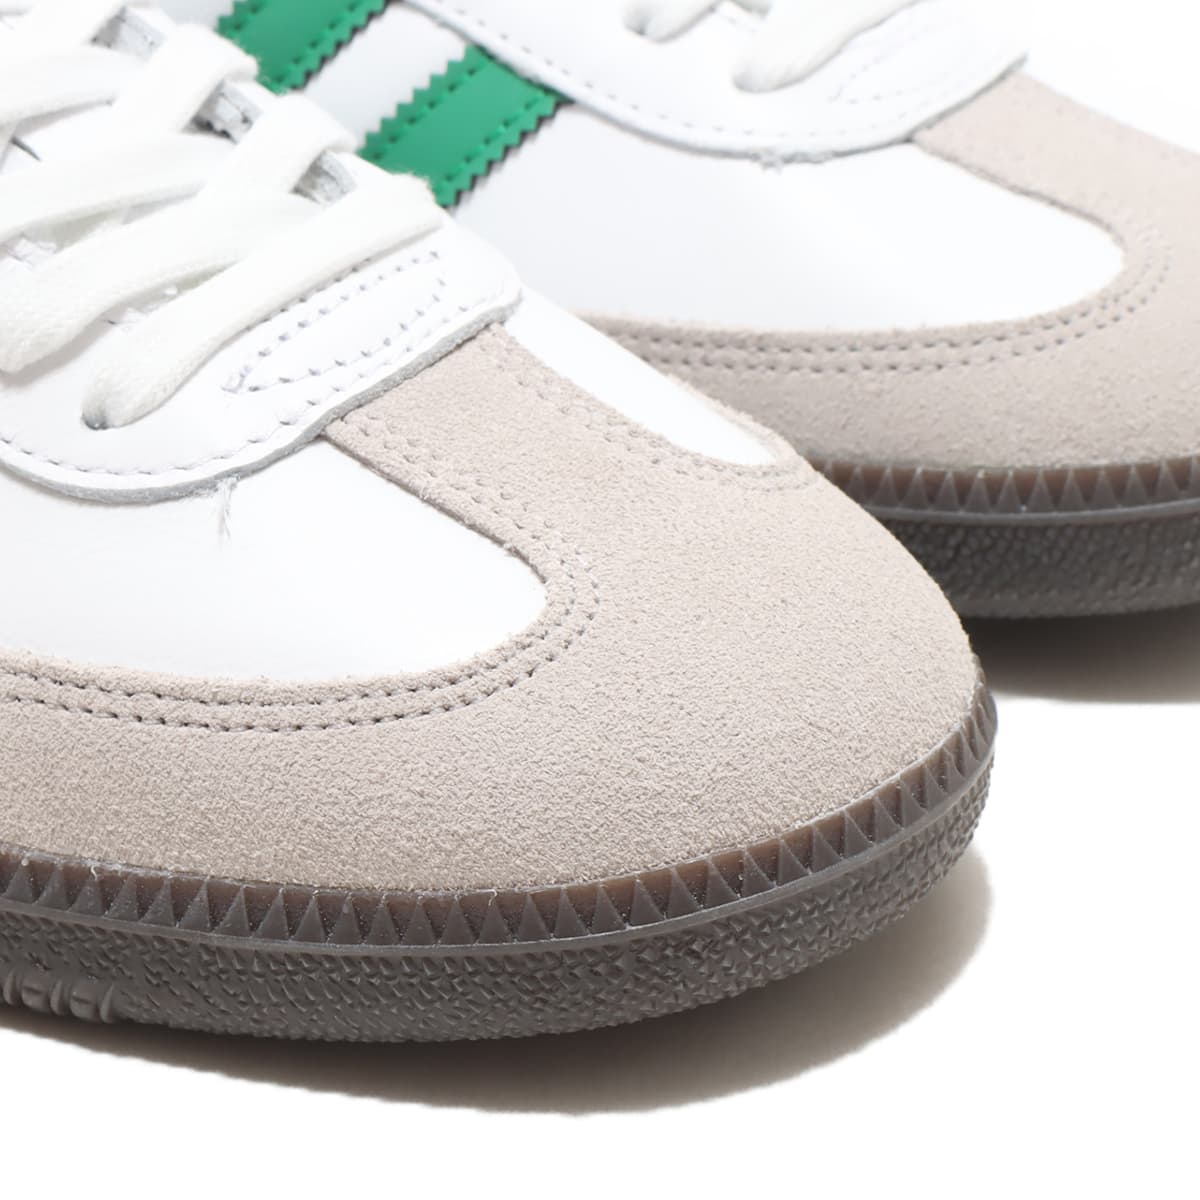 adidas Originals Samba OG White/Green 30